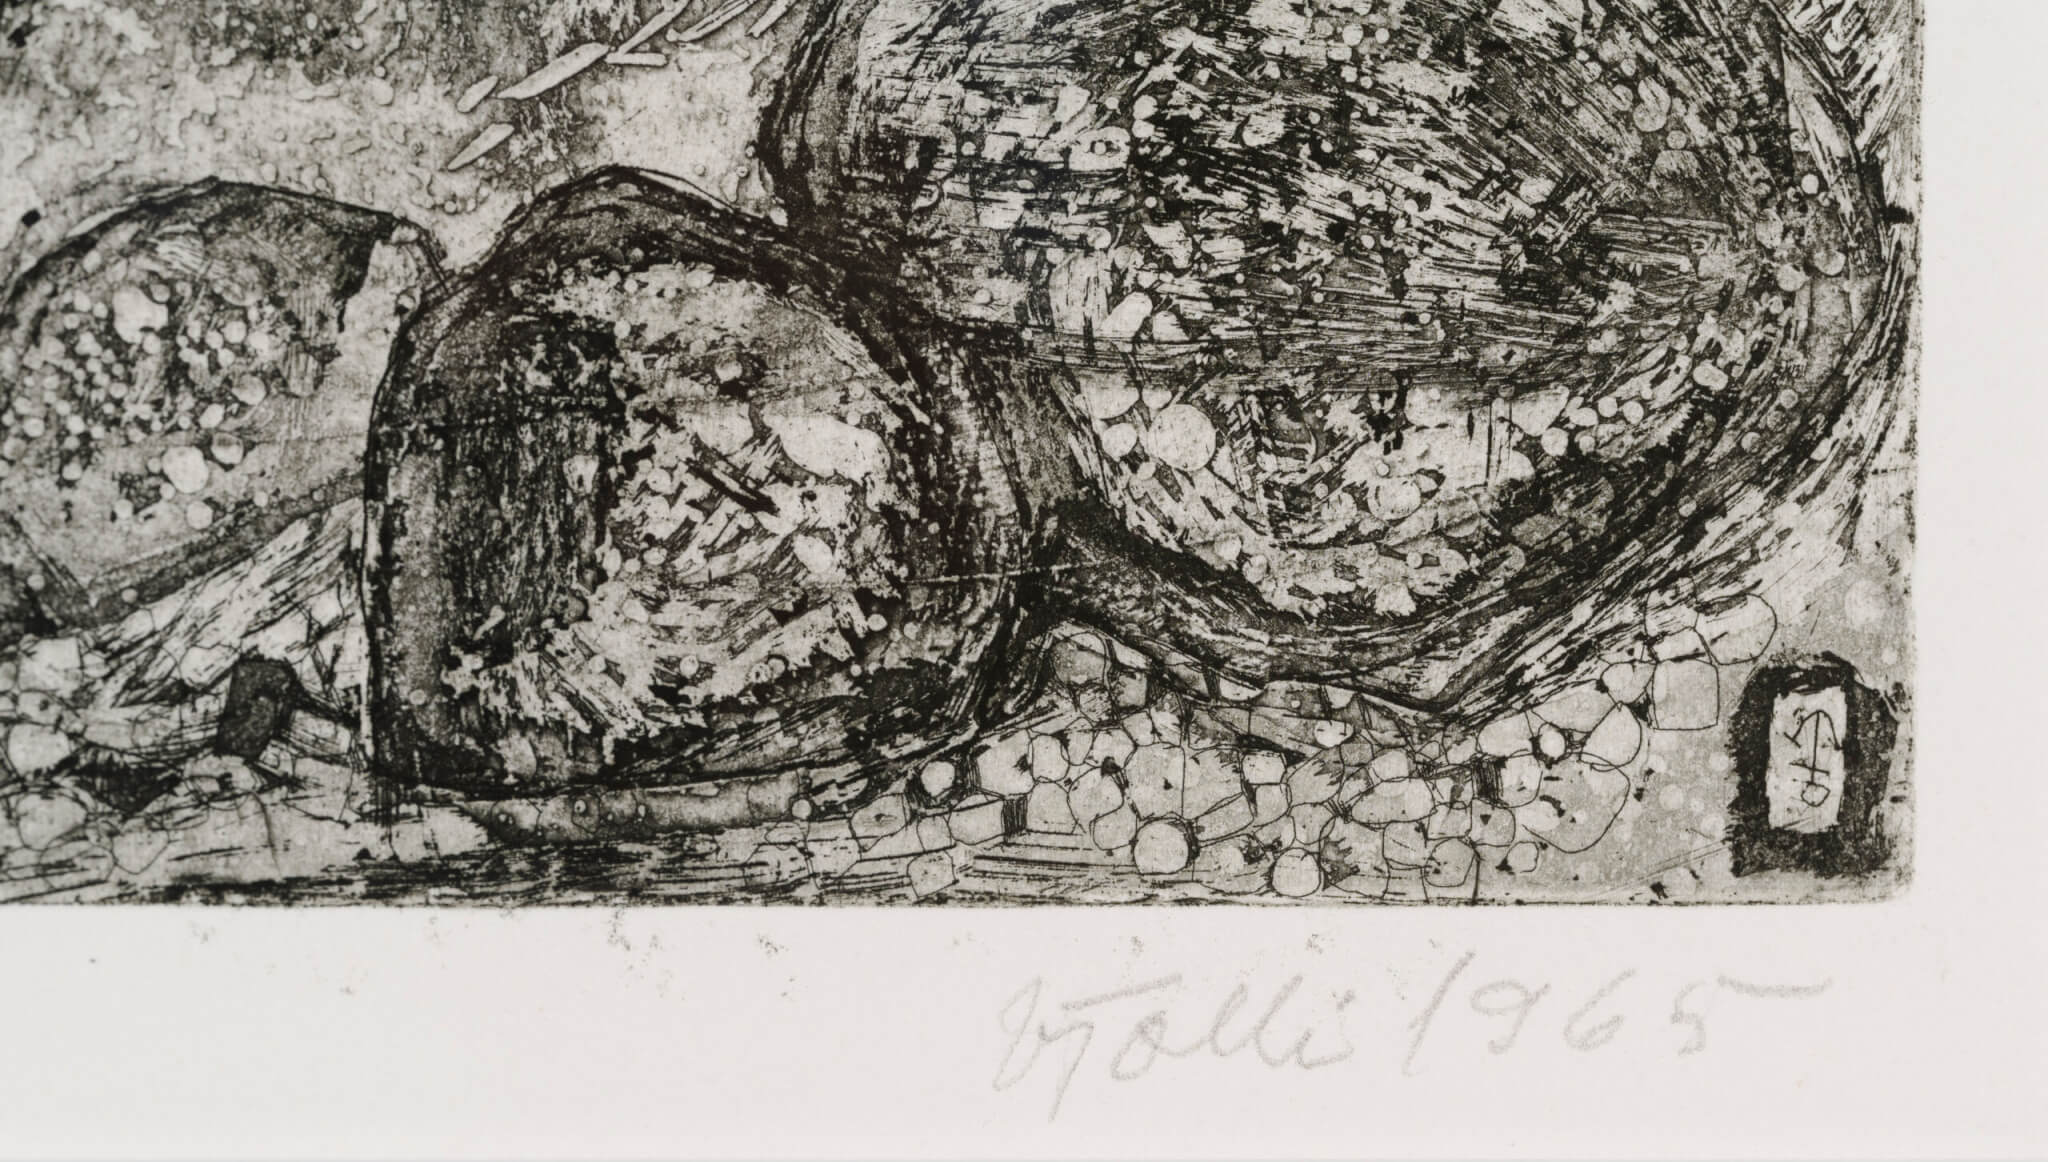 Vive Tolli “Suur kadakas”, 1965. 46,5 x 48,5cm